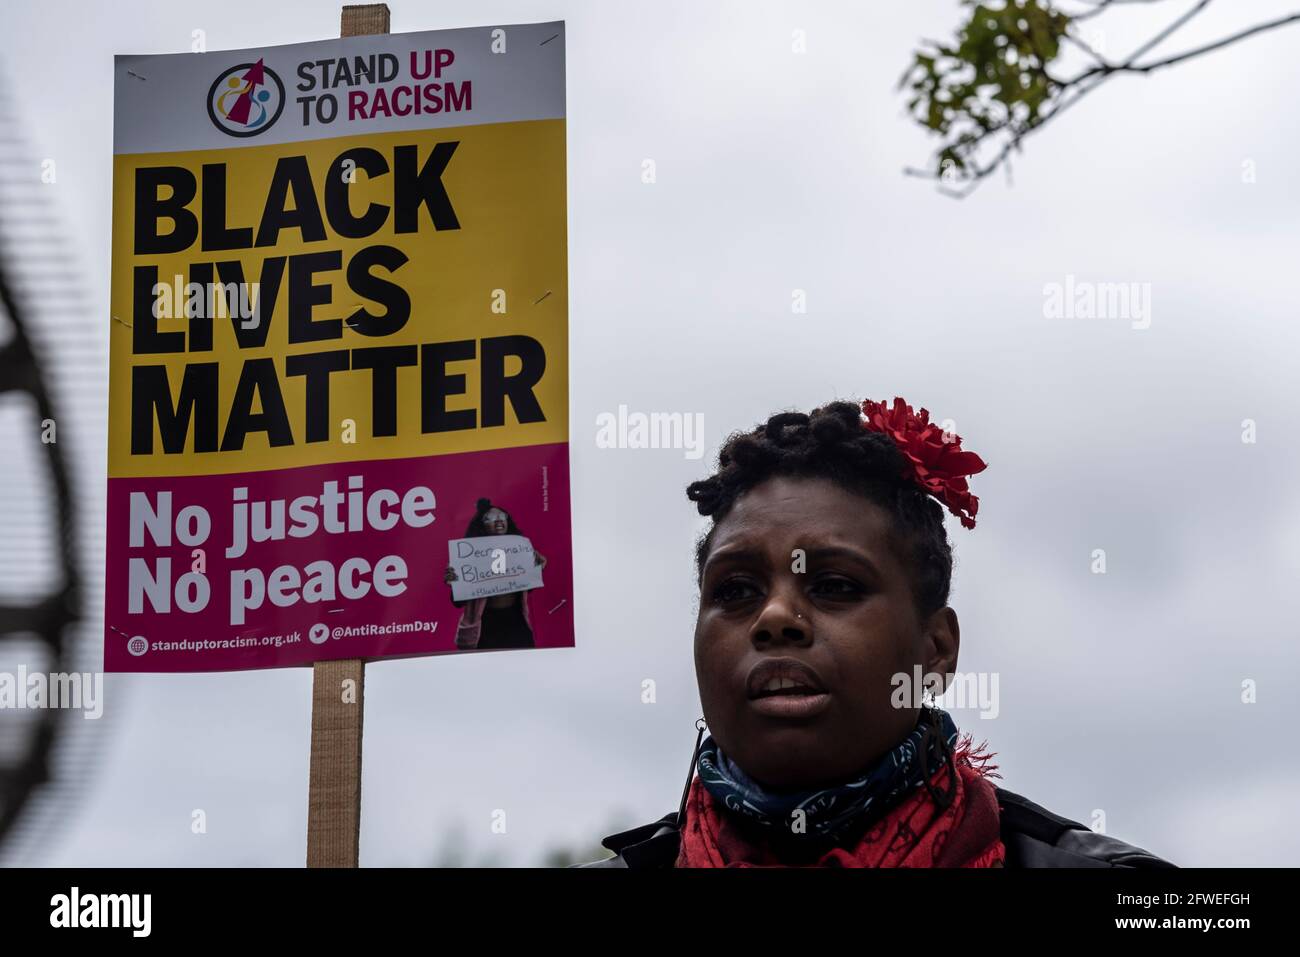 Ambasciata DEGLI STATI UNITI, Nine Elms, Londra, Regno Unito. 22 maggio 2021. In prossimità del primo anniversario della morte di George Floyd, una protesta commemorativa si sta svolgendo fuori dall'ambasciata degli Stati Uniti a Londra. Guidato dal gruppo Stand Up to Racism e Black Lives Matter Foto Stock